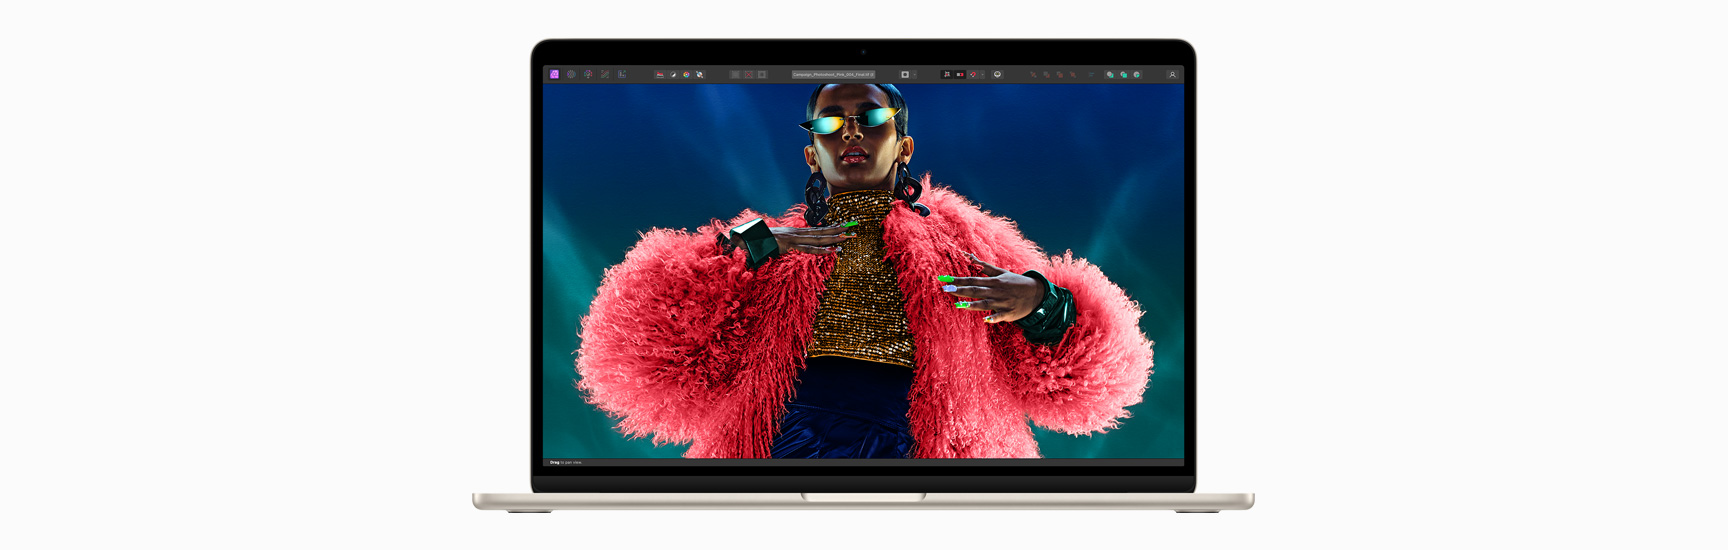 MacBook Air’in Liquid Retina ekranını gösteren önden görünümü.